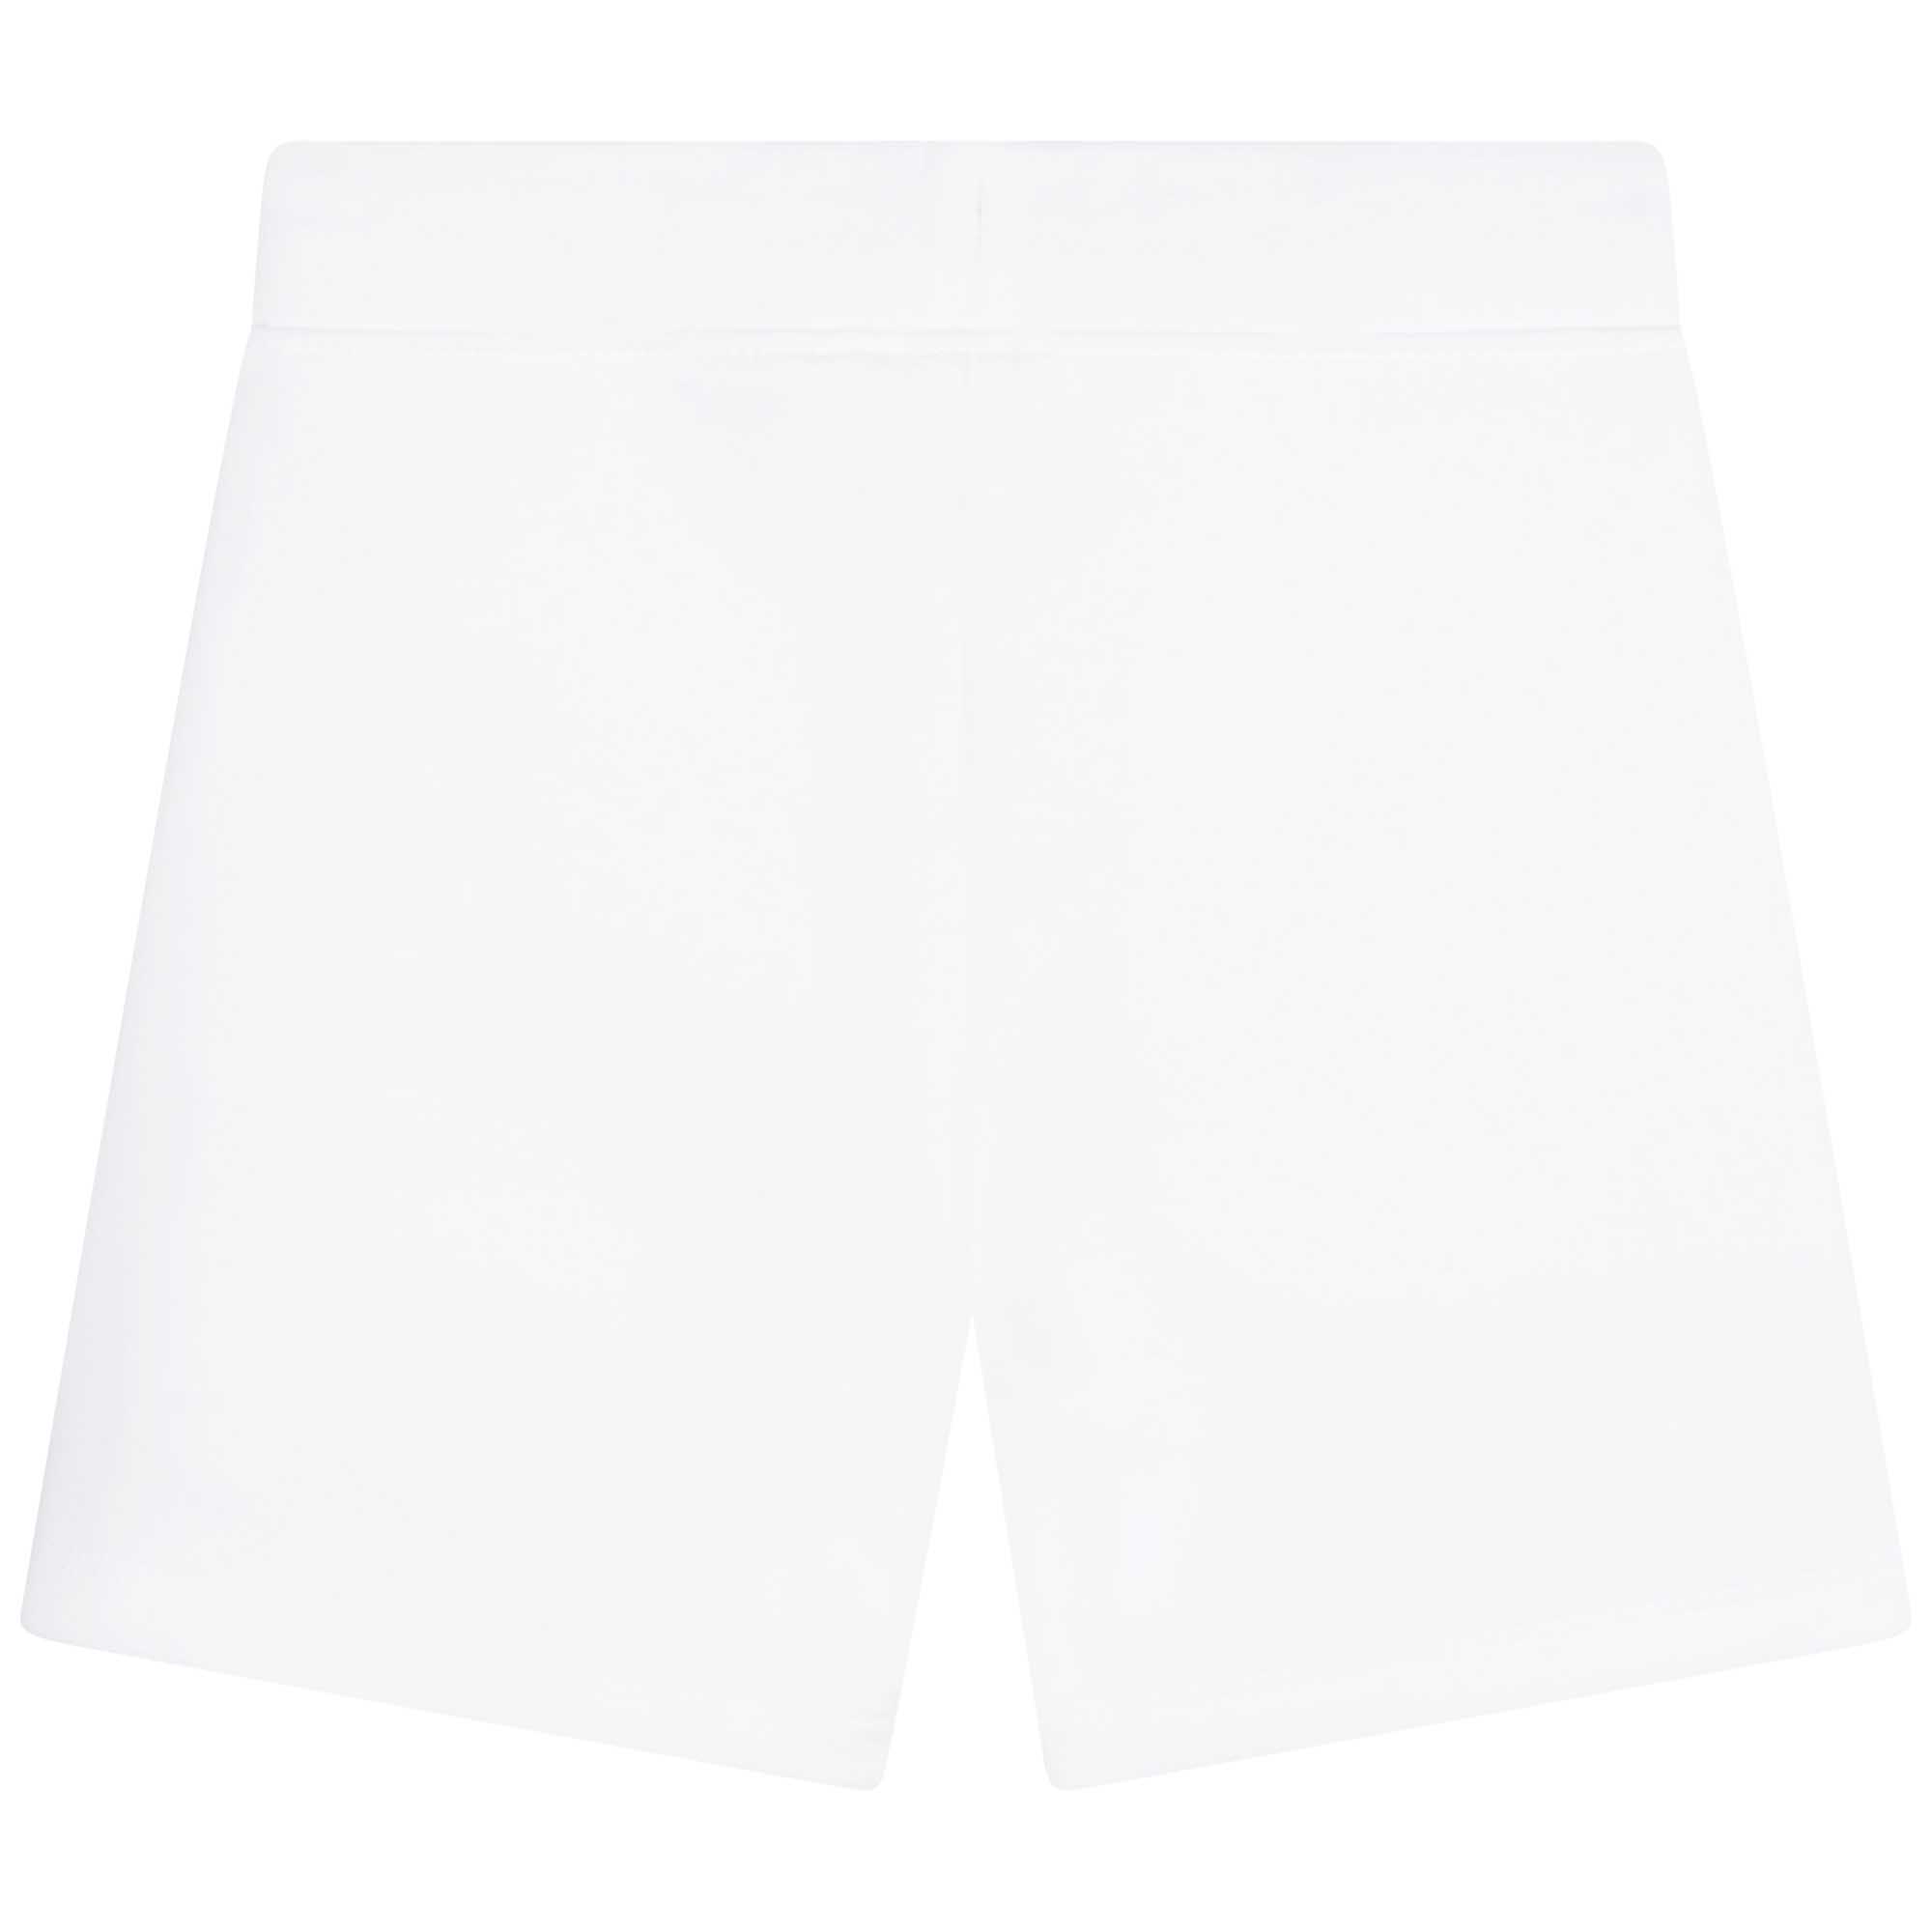 Set shorts e t-shirt in cotone BOSS Per RAGAZZO